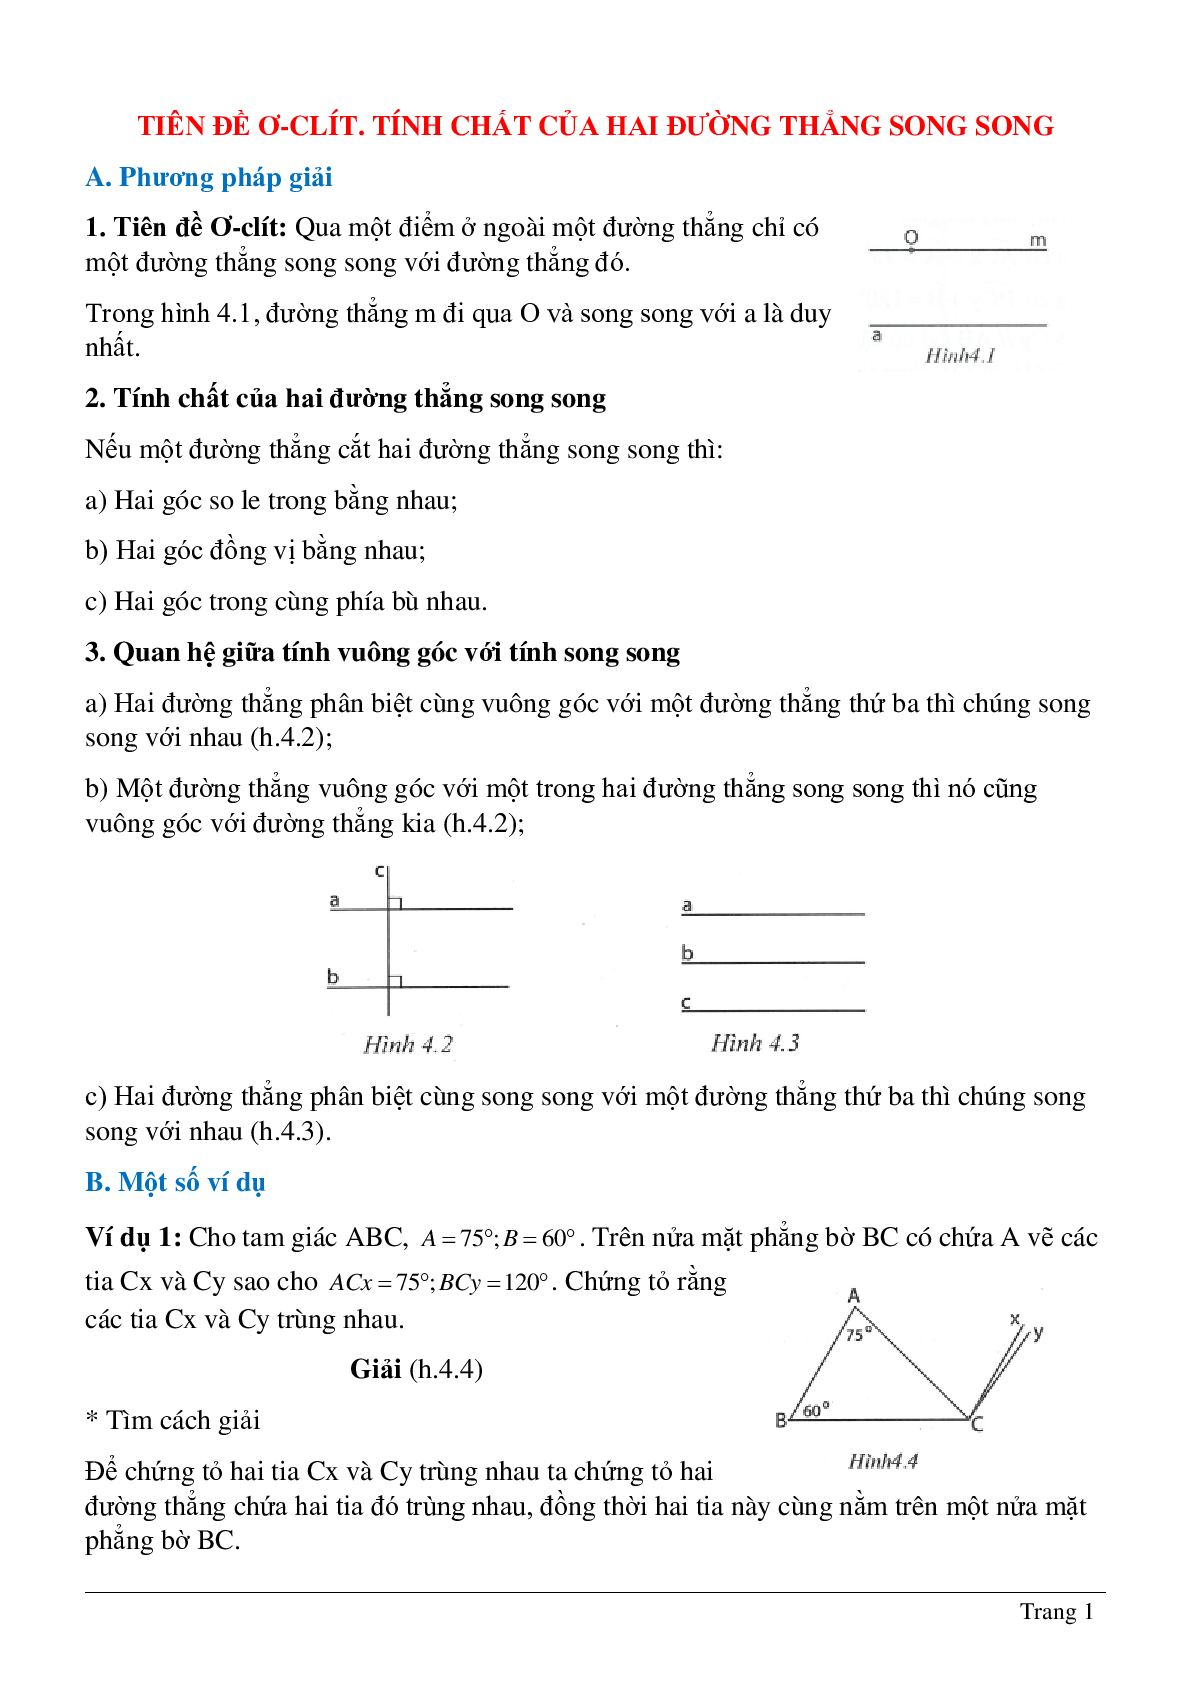 Phương pháp giải và bài tập về Tiên đề Ơ-clit - Tính chất của hai đường thẳng song song có lời giải (trang 1)